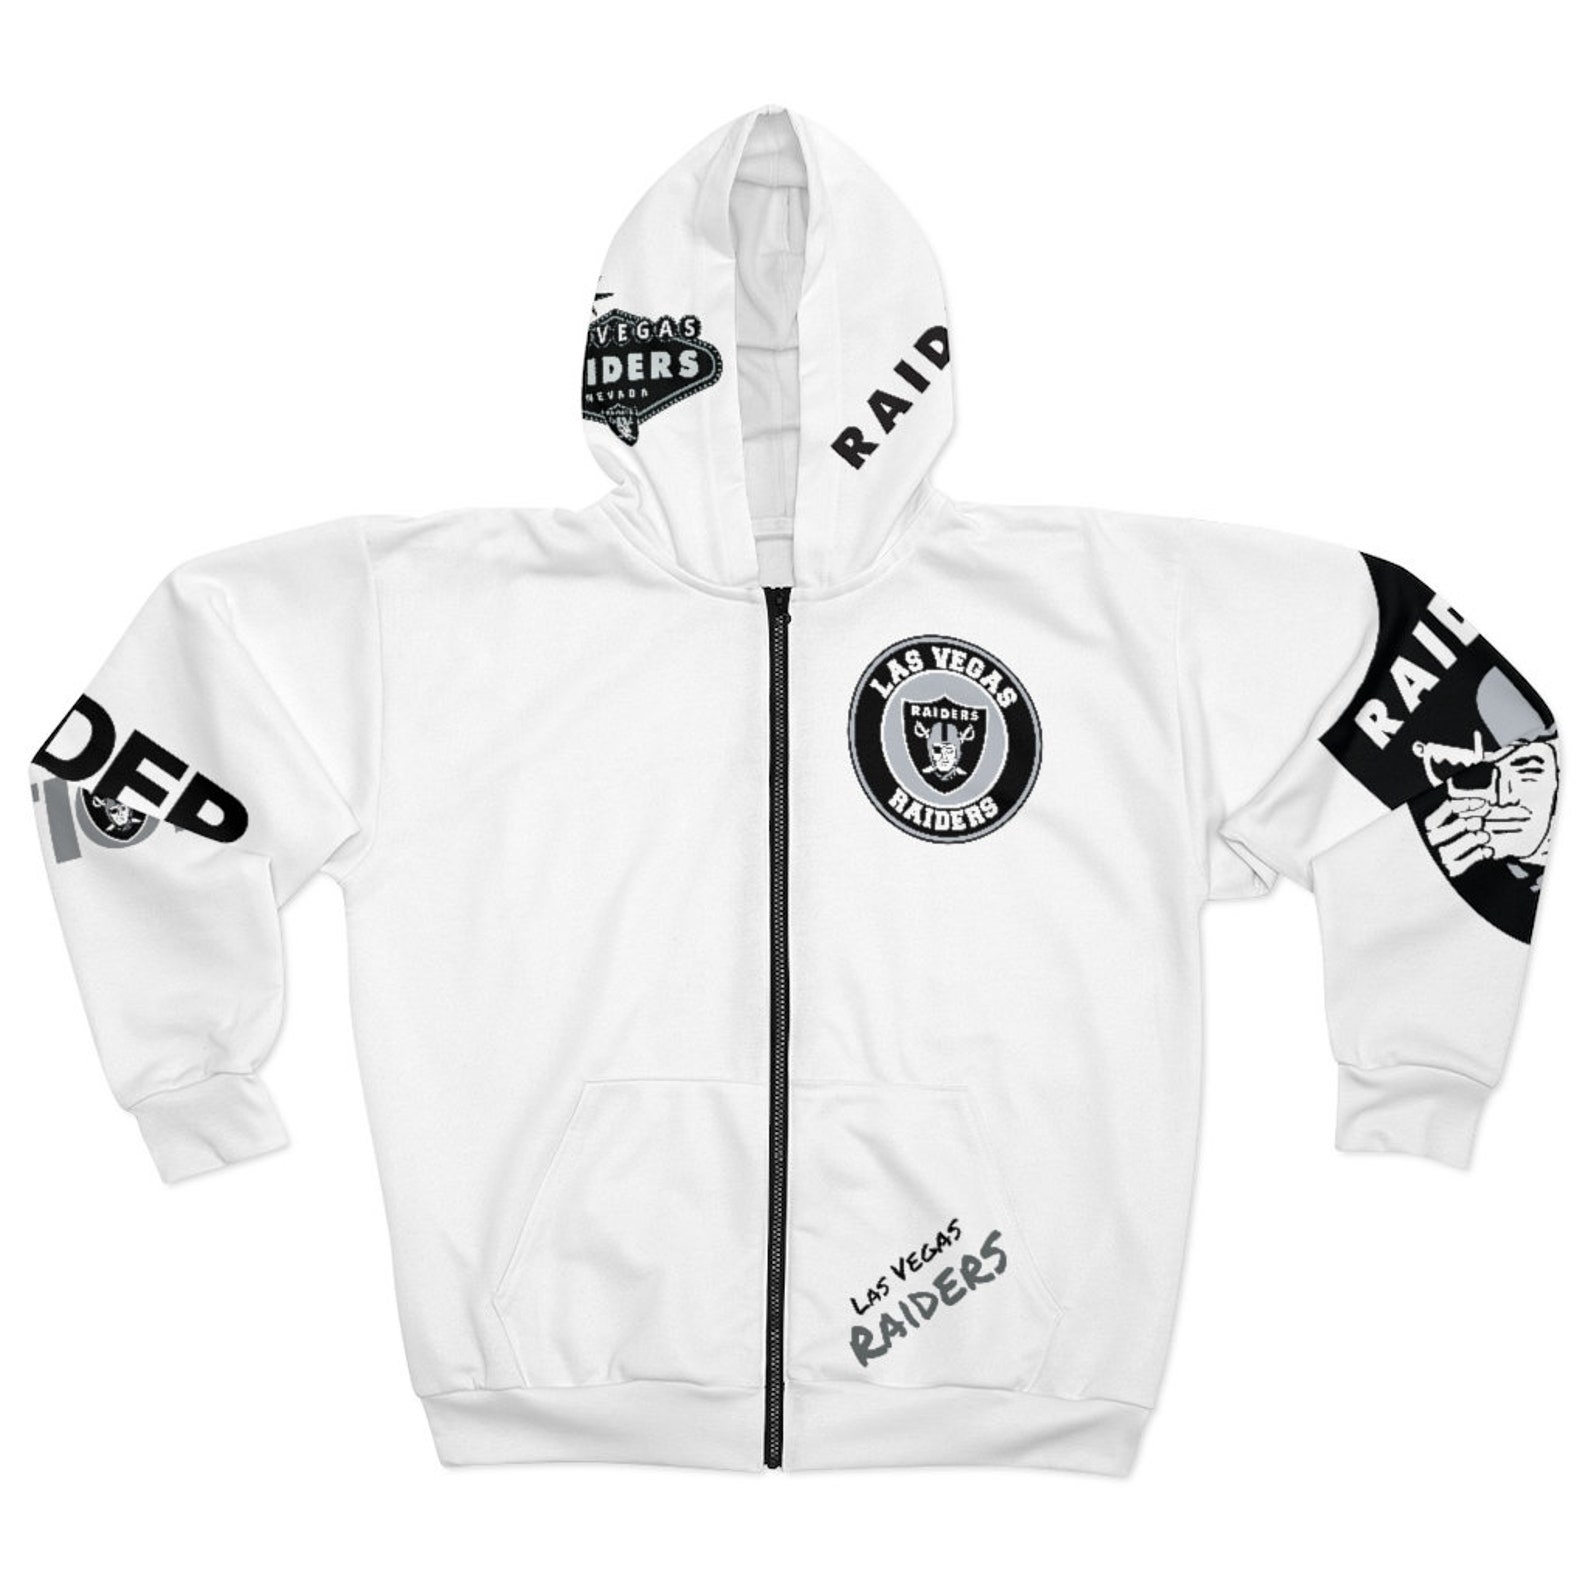 Las Vegas Raiders Zip Hoodie This Zipped fleece jacket will | Etsy